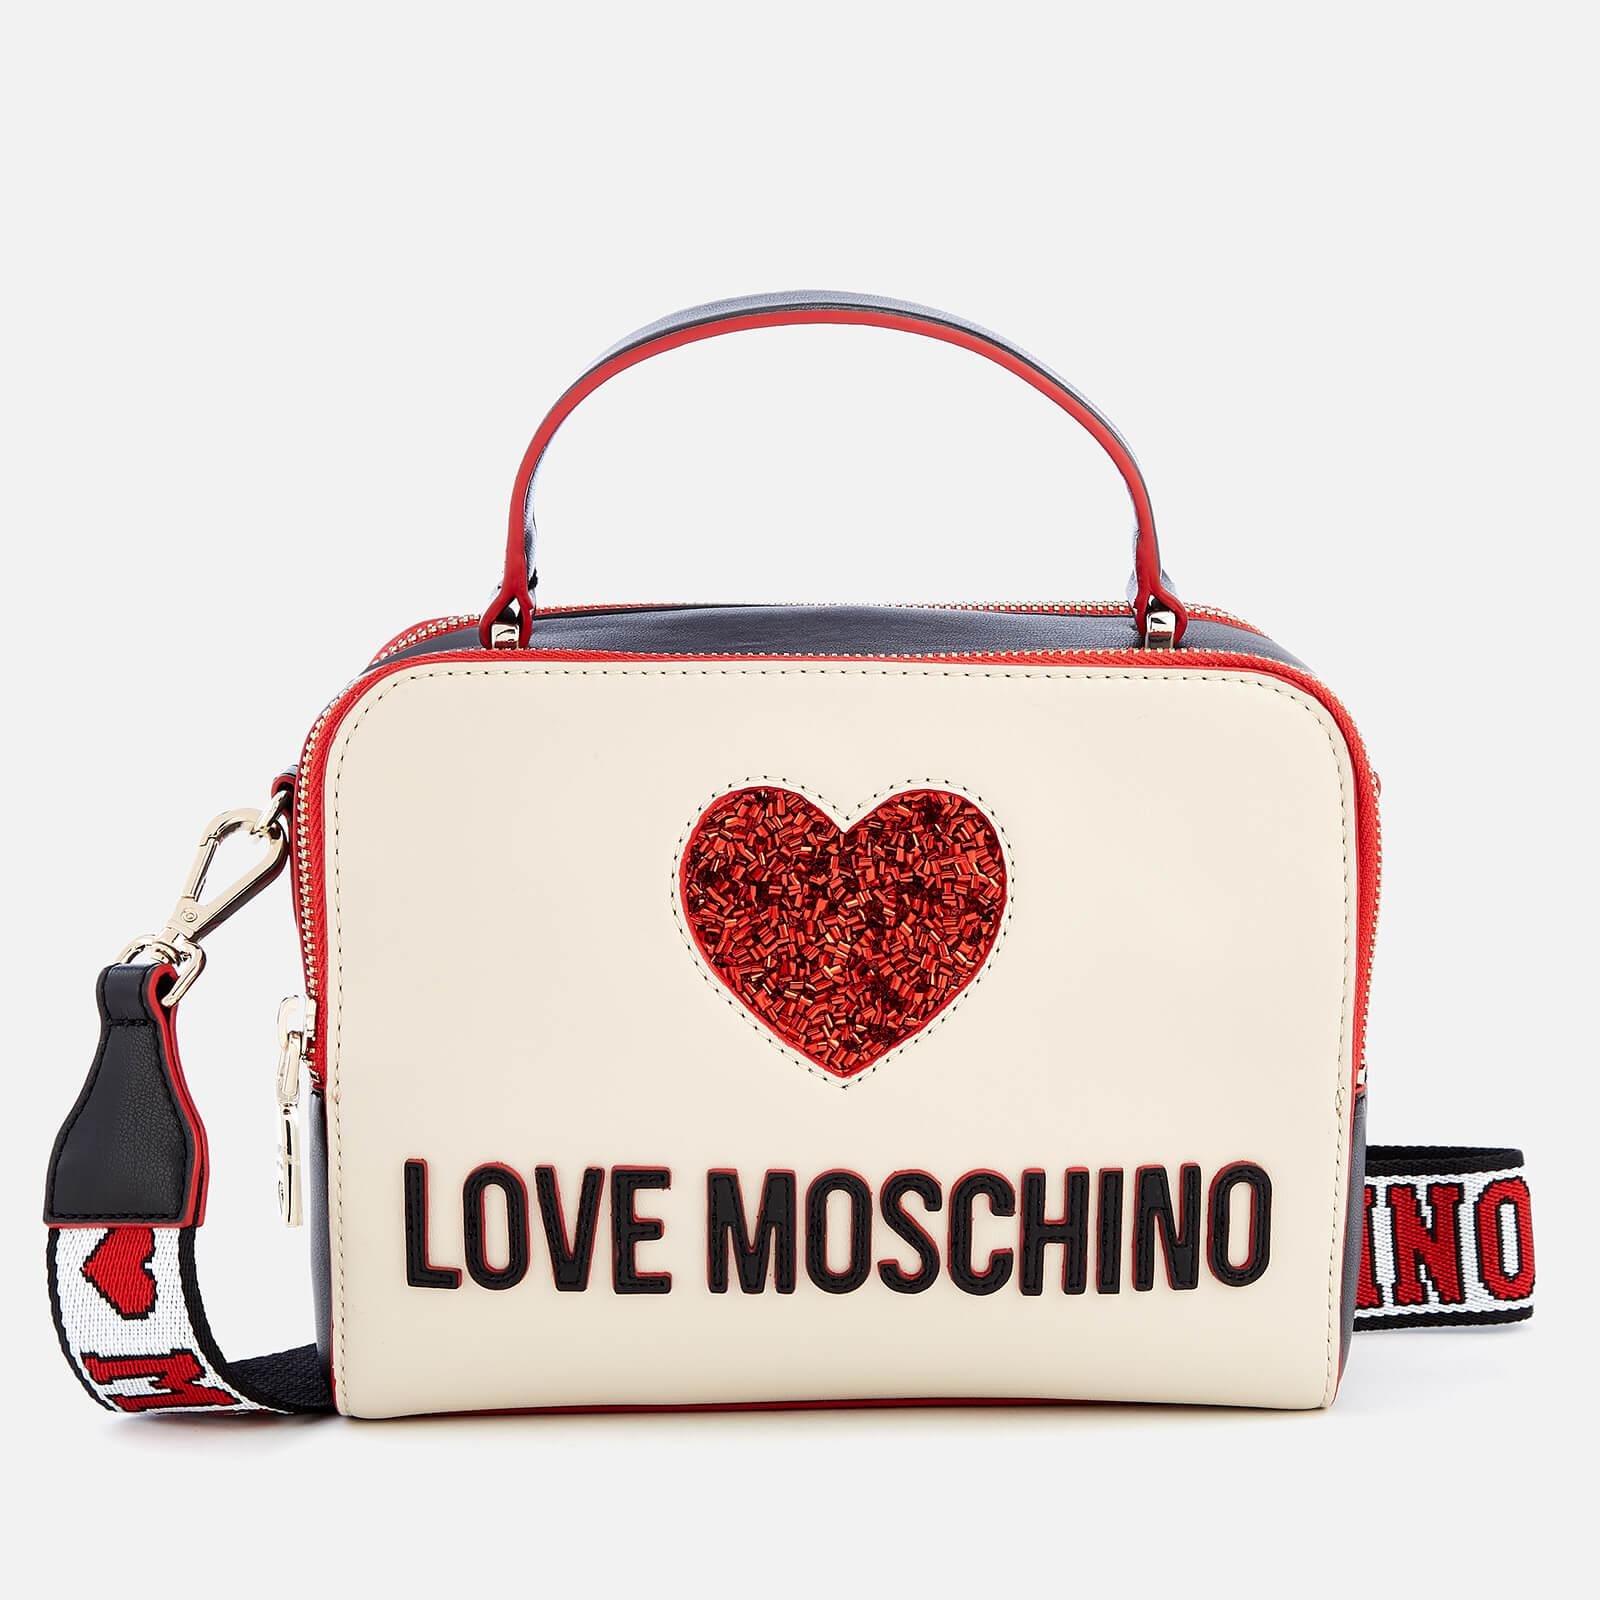 Сумки лове. Moschino сумка Heartbeat. Сумка Love Moschino Heart bit. Love Moschino Bag 2010. Jc4349pp0ekq1 сумка Love Moschino.